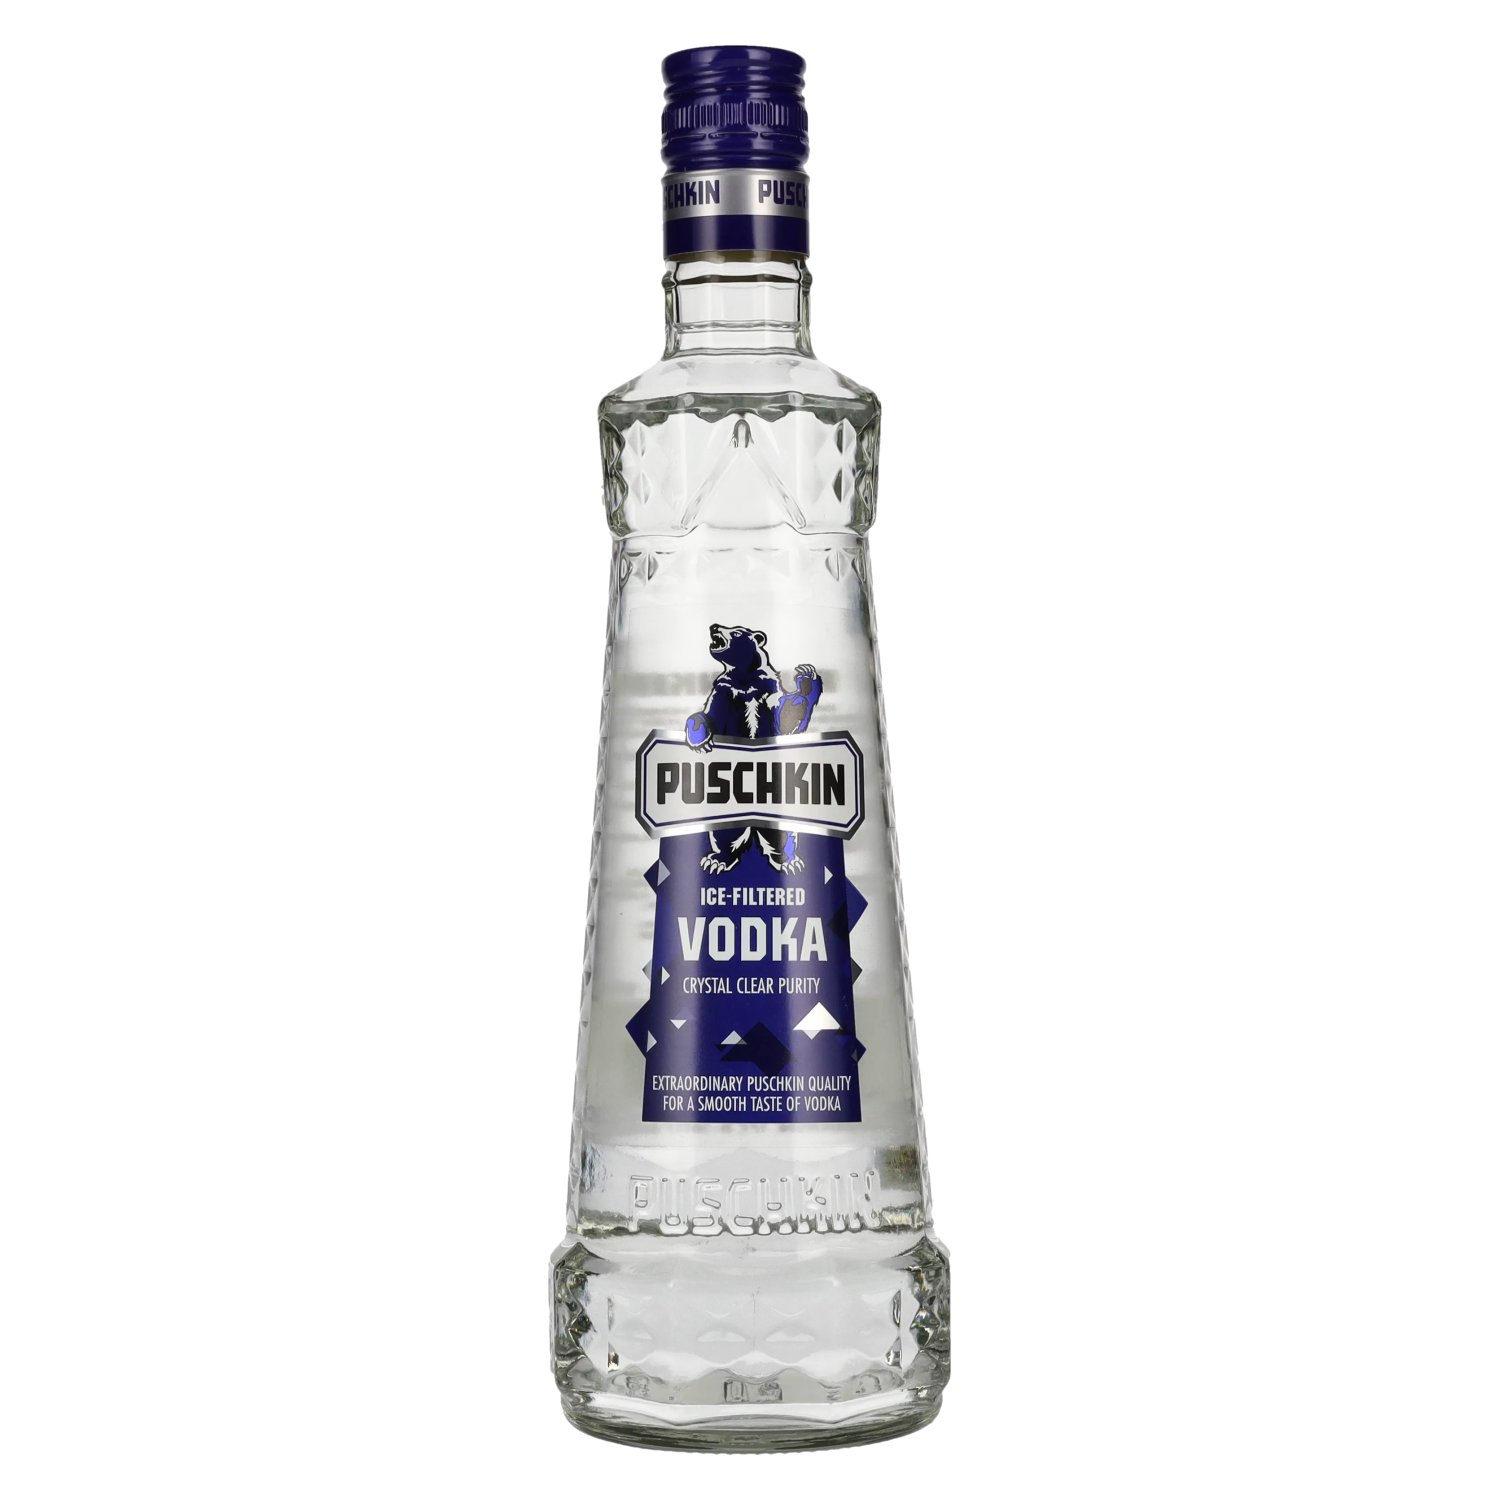 Puschkin Ice-Filtered Vodka 37,5% Vol. - 0,7l delicando